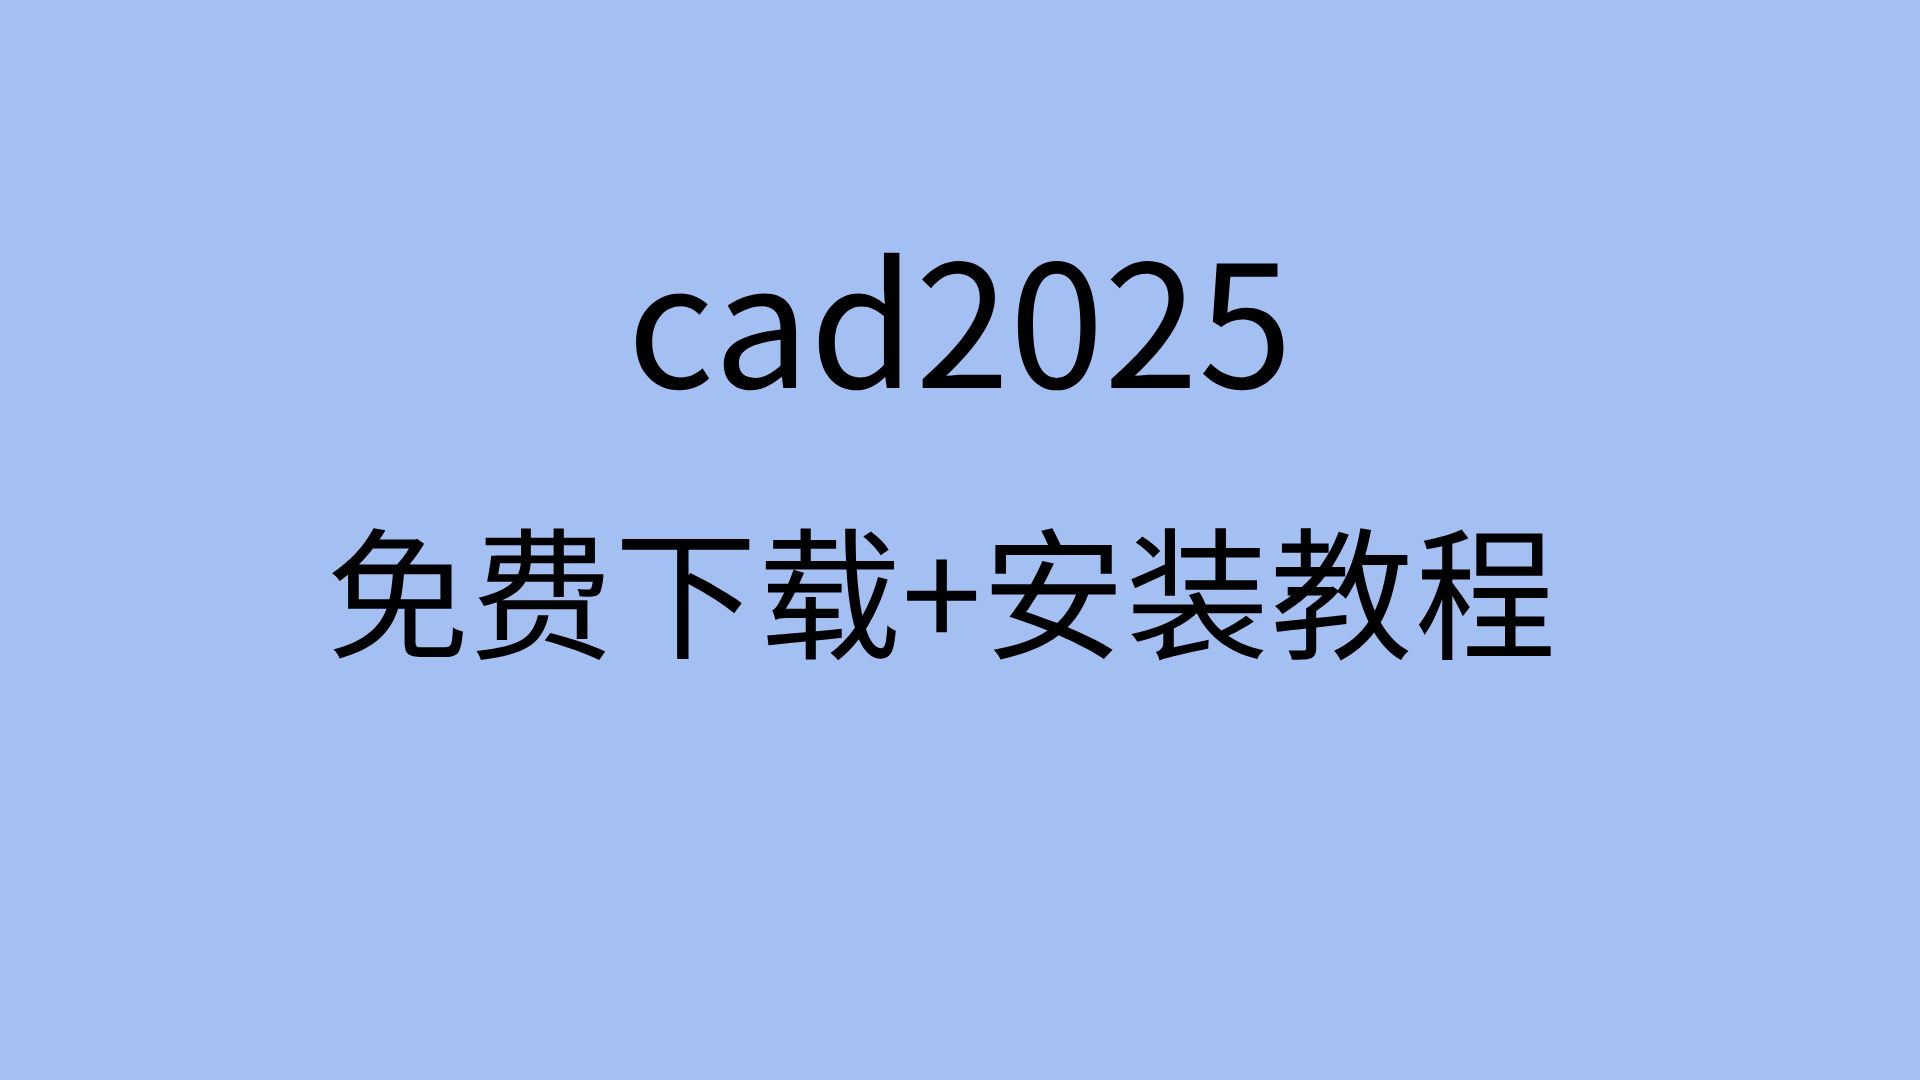 cad2025安装教程链接cad2025下载教程cad2025安装包